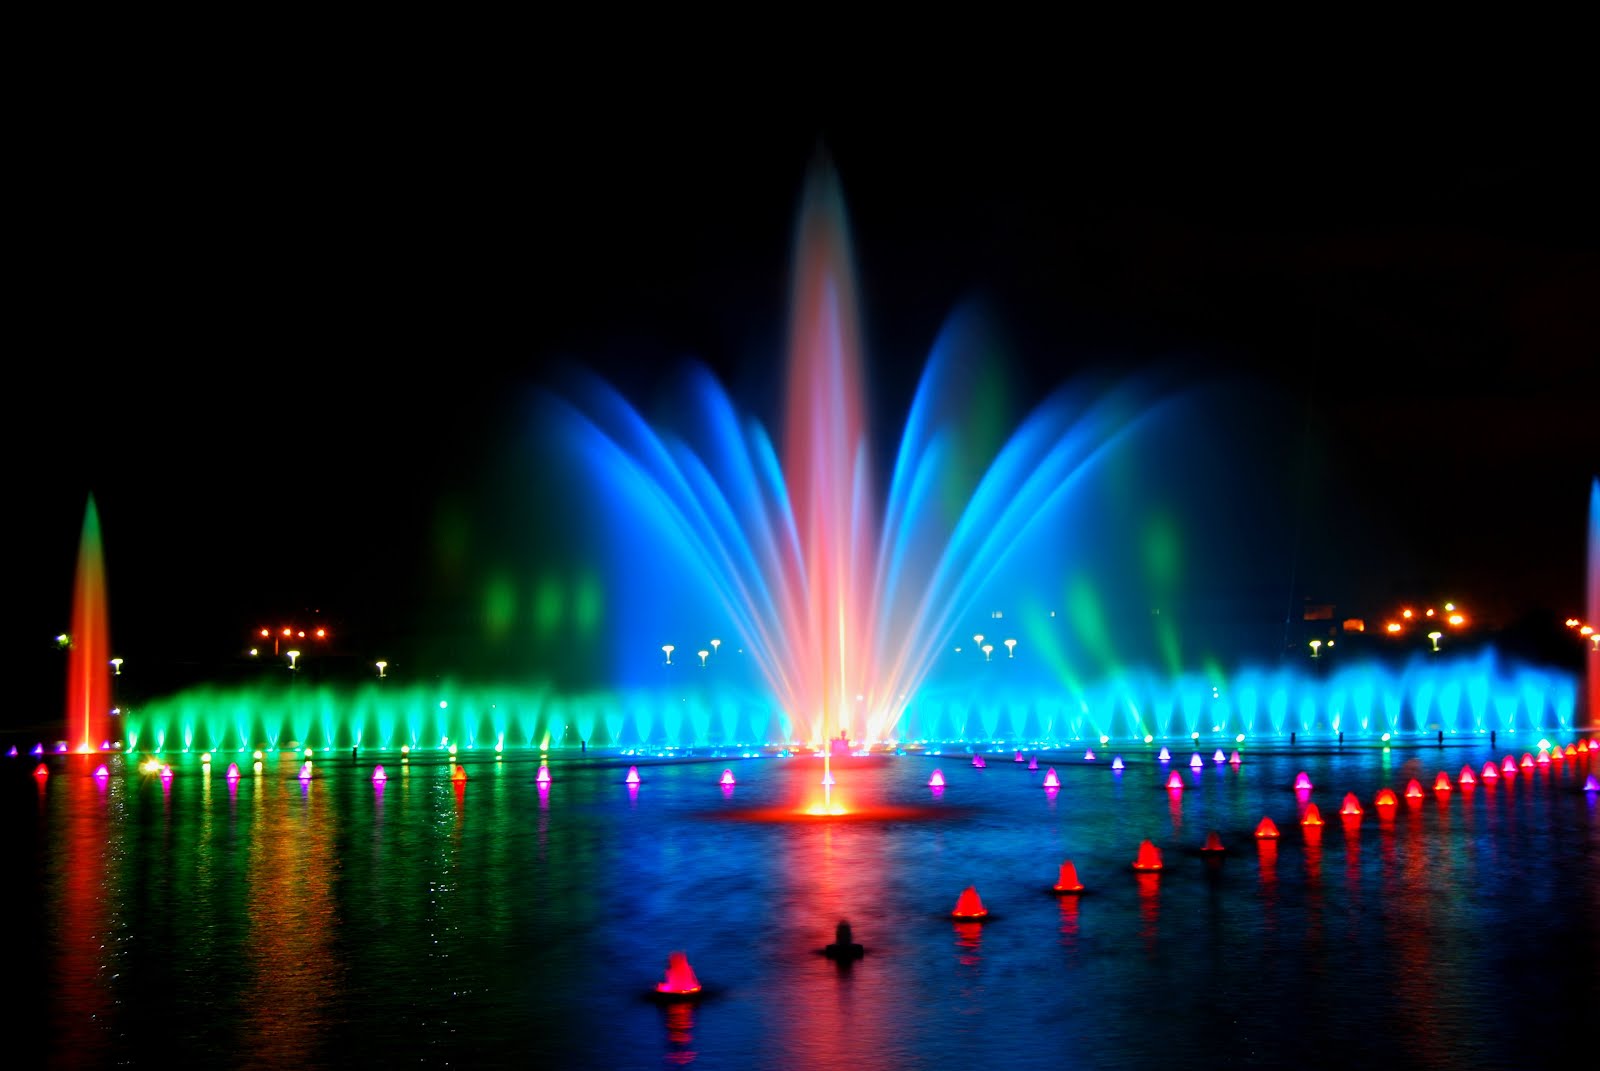 The Musical Wrocław Fountain